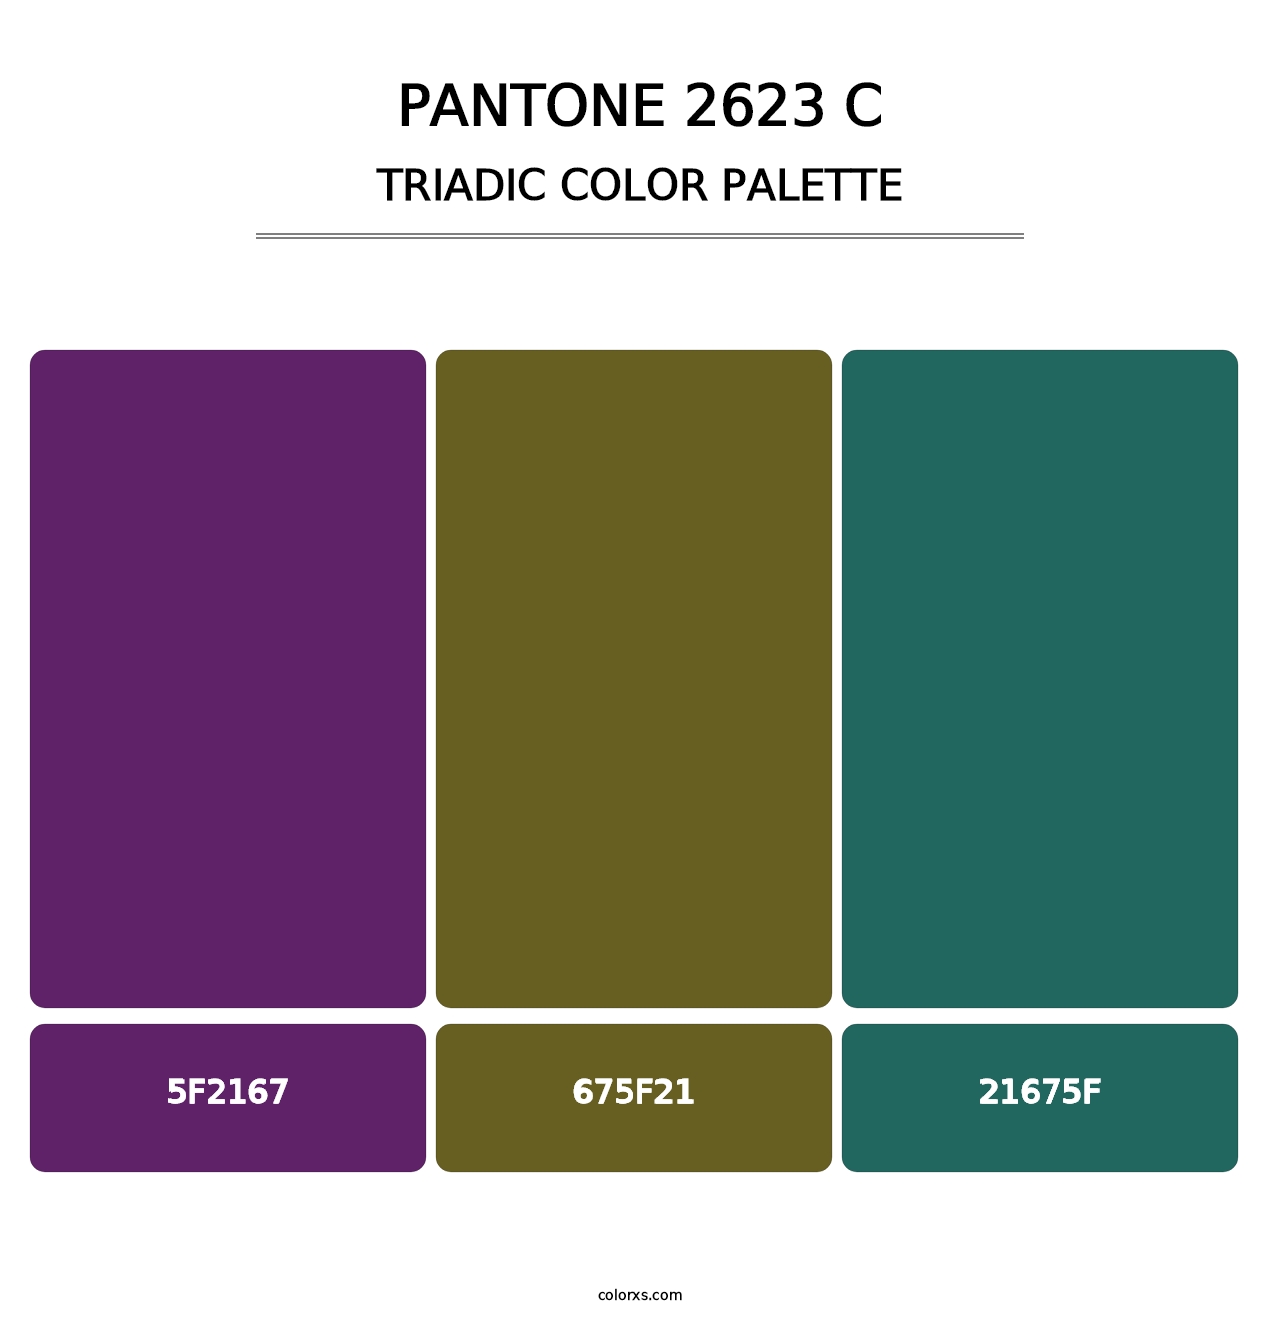 PANTONE 2623 C - Triadic Color Palette